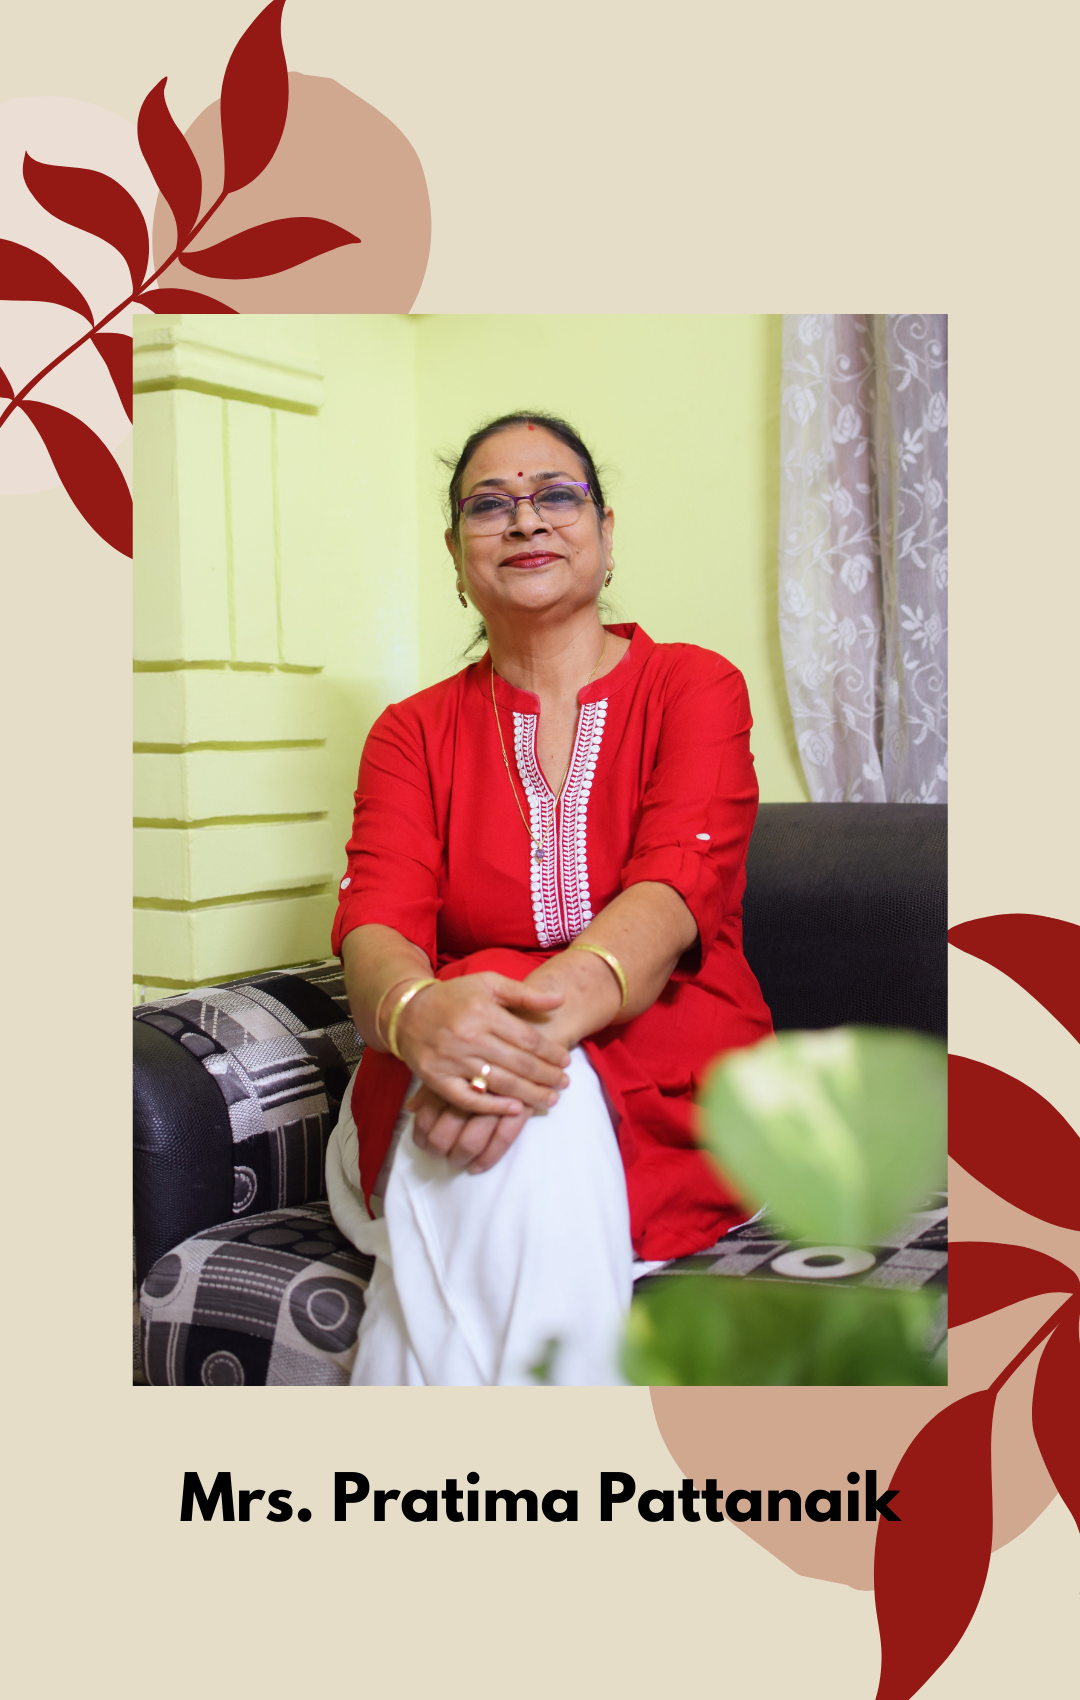  Mrs. Pratima Pattanaik